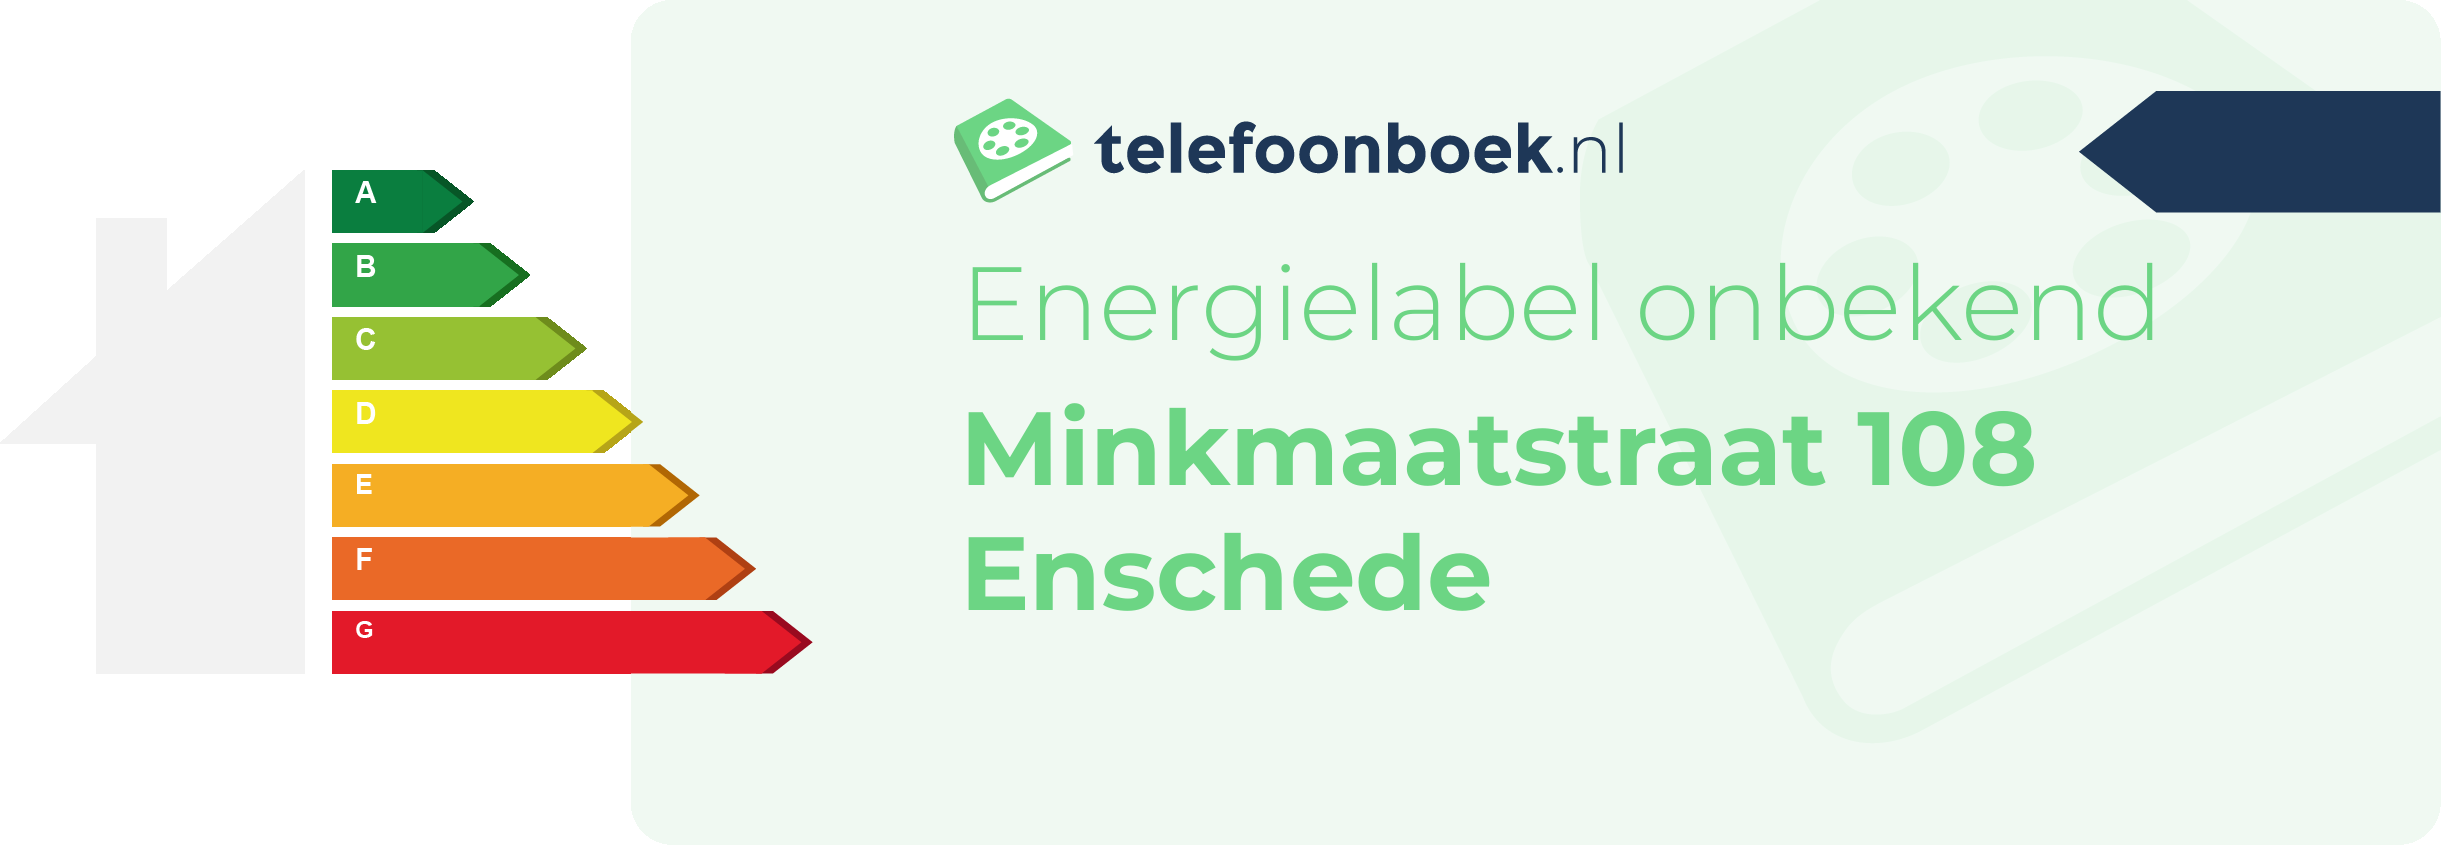 Energielabel Minkmaatstraat 108 Enschede